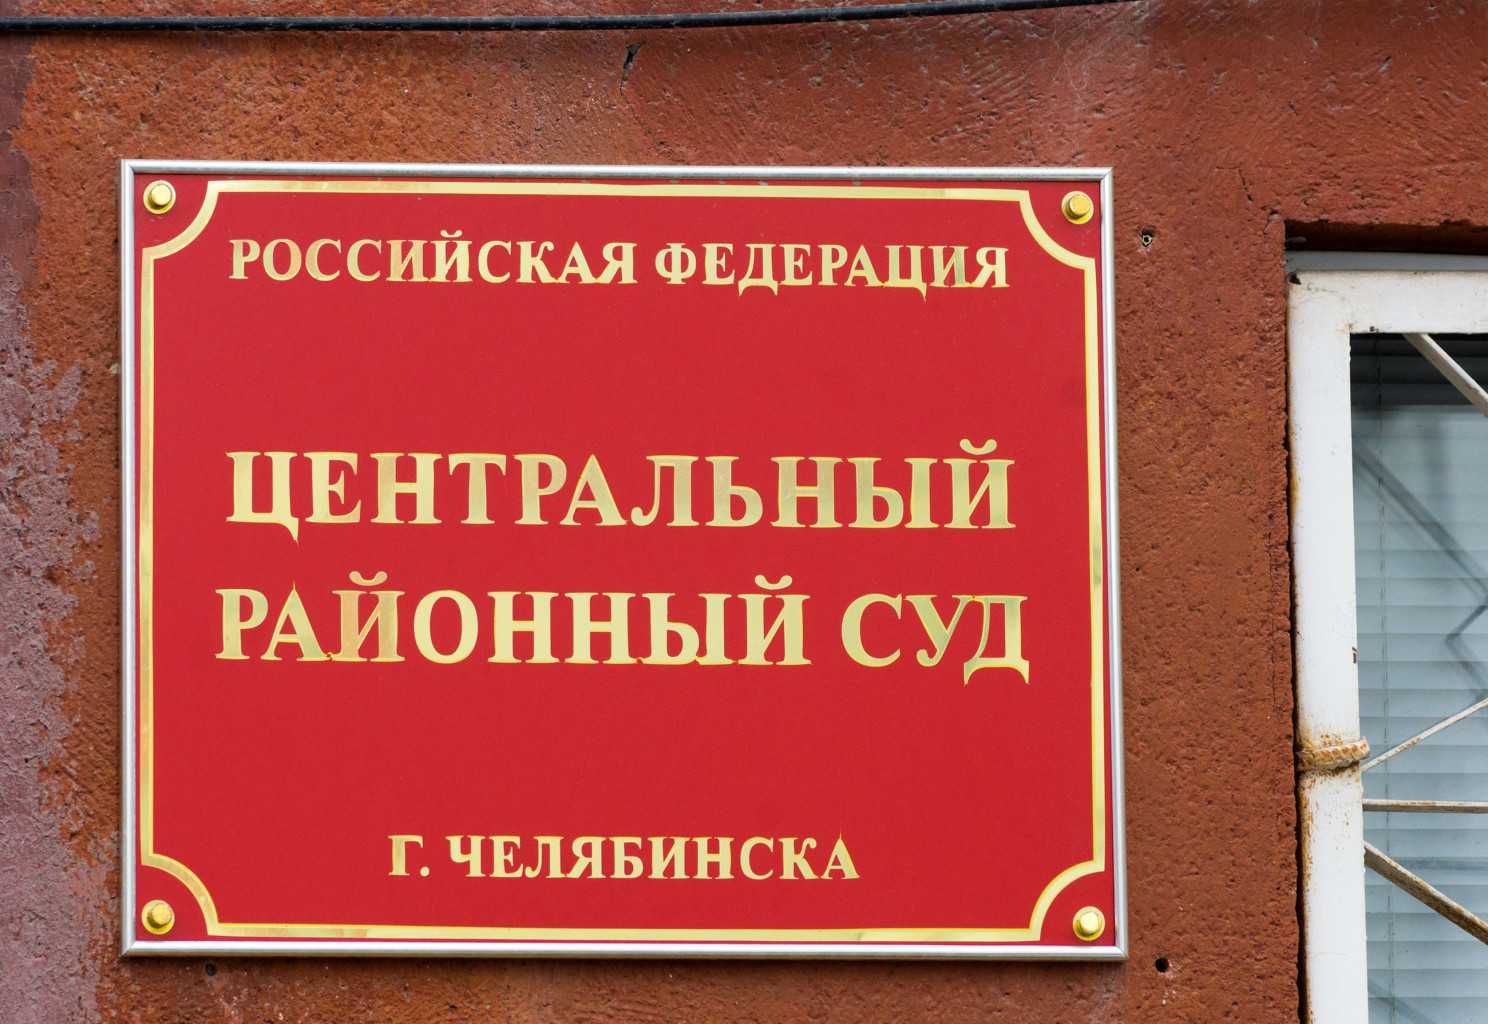 В Челябинске появился новый зампредседателя районного суда